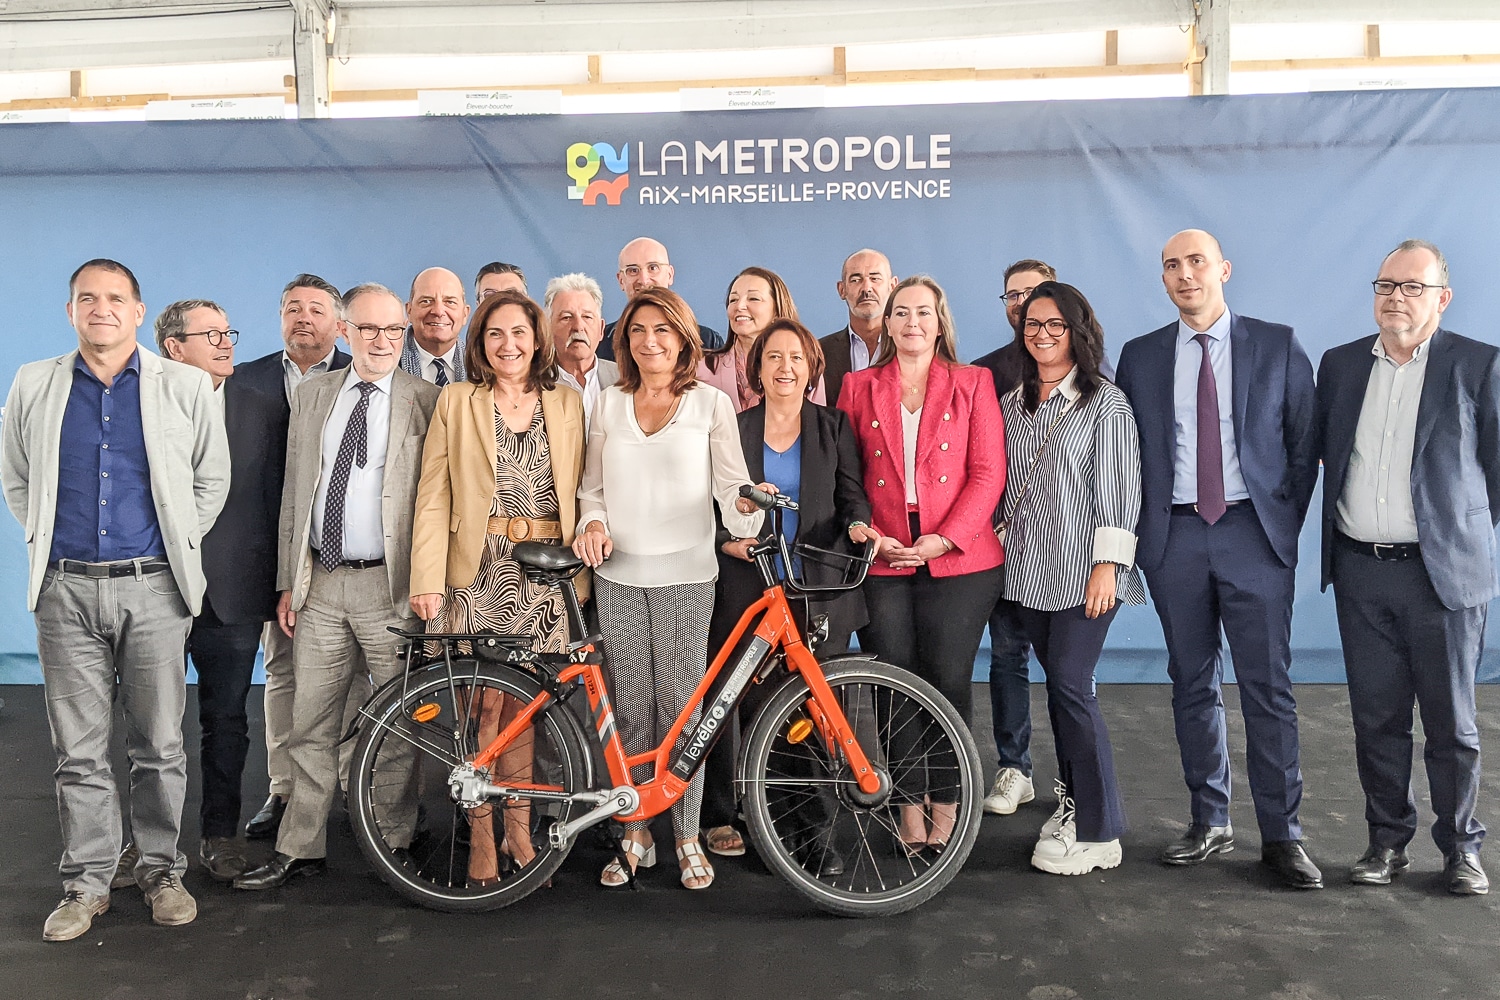 transports, Vidéo | La Métropole veut faire entrer les transports « dans le 21e siècle », Made in Marseille